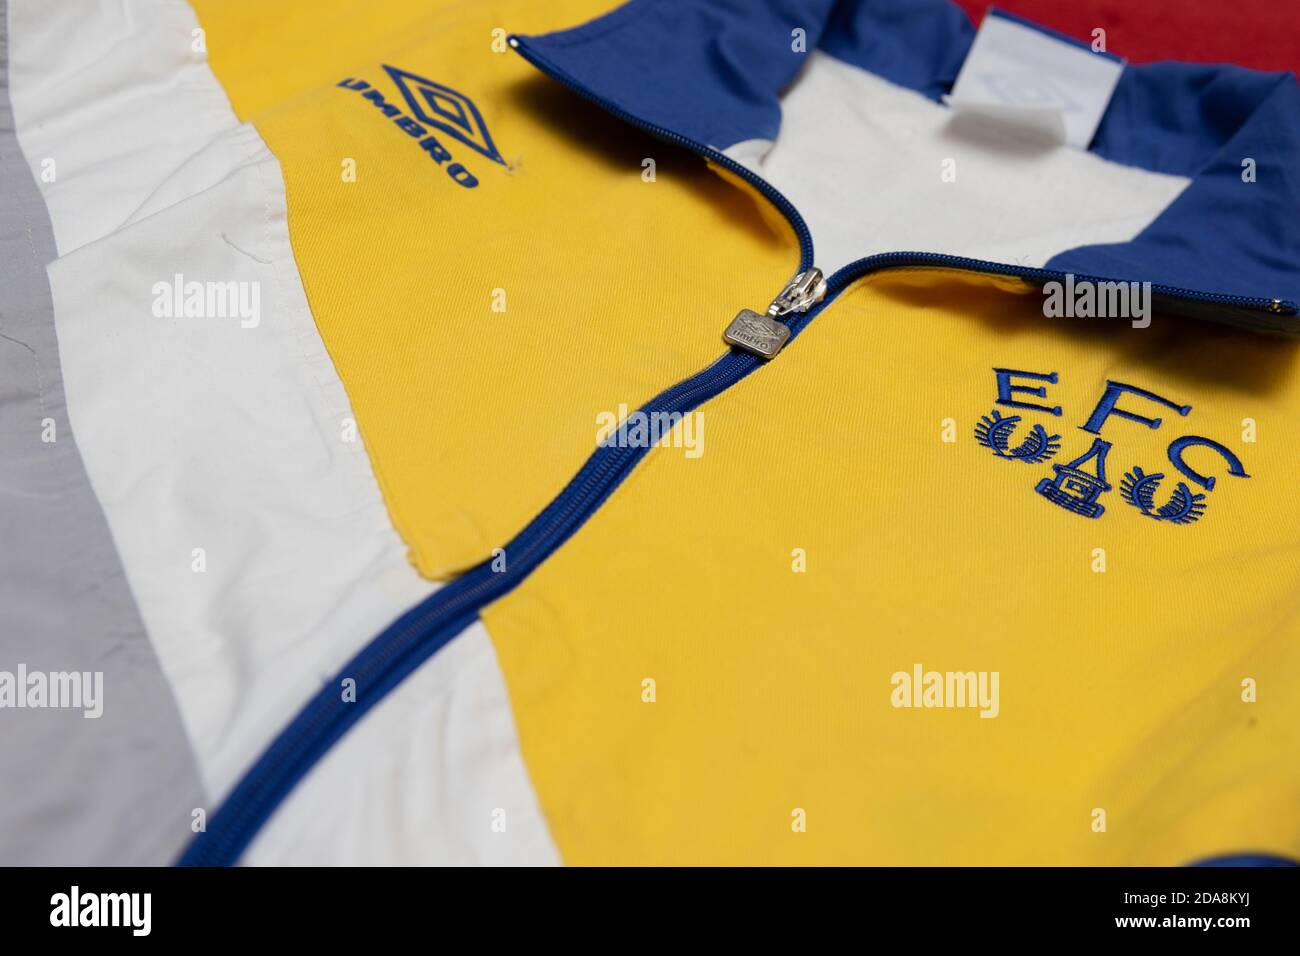 Chaqueta deportiva Everton Umbro EFC amarilla blanca gris y azul con cremallera Foto de stock